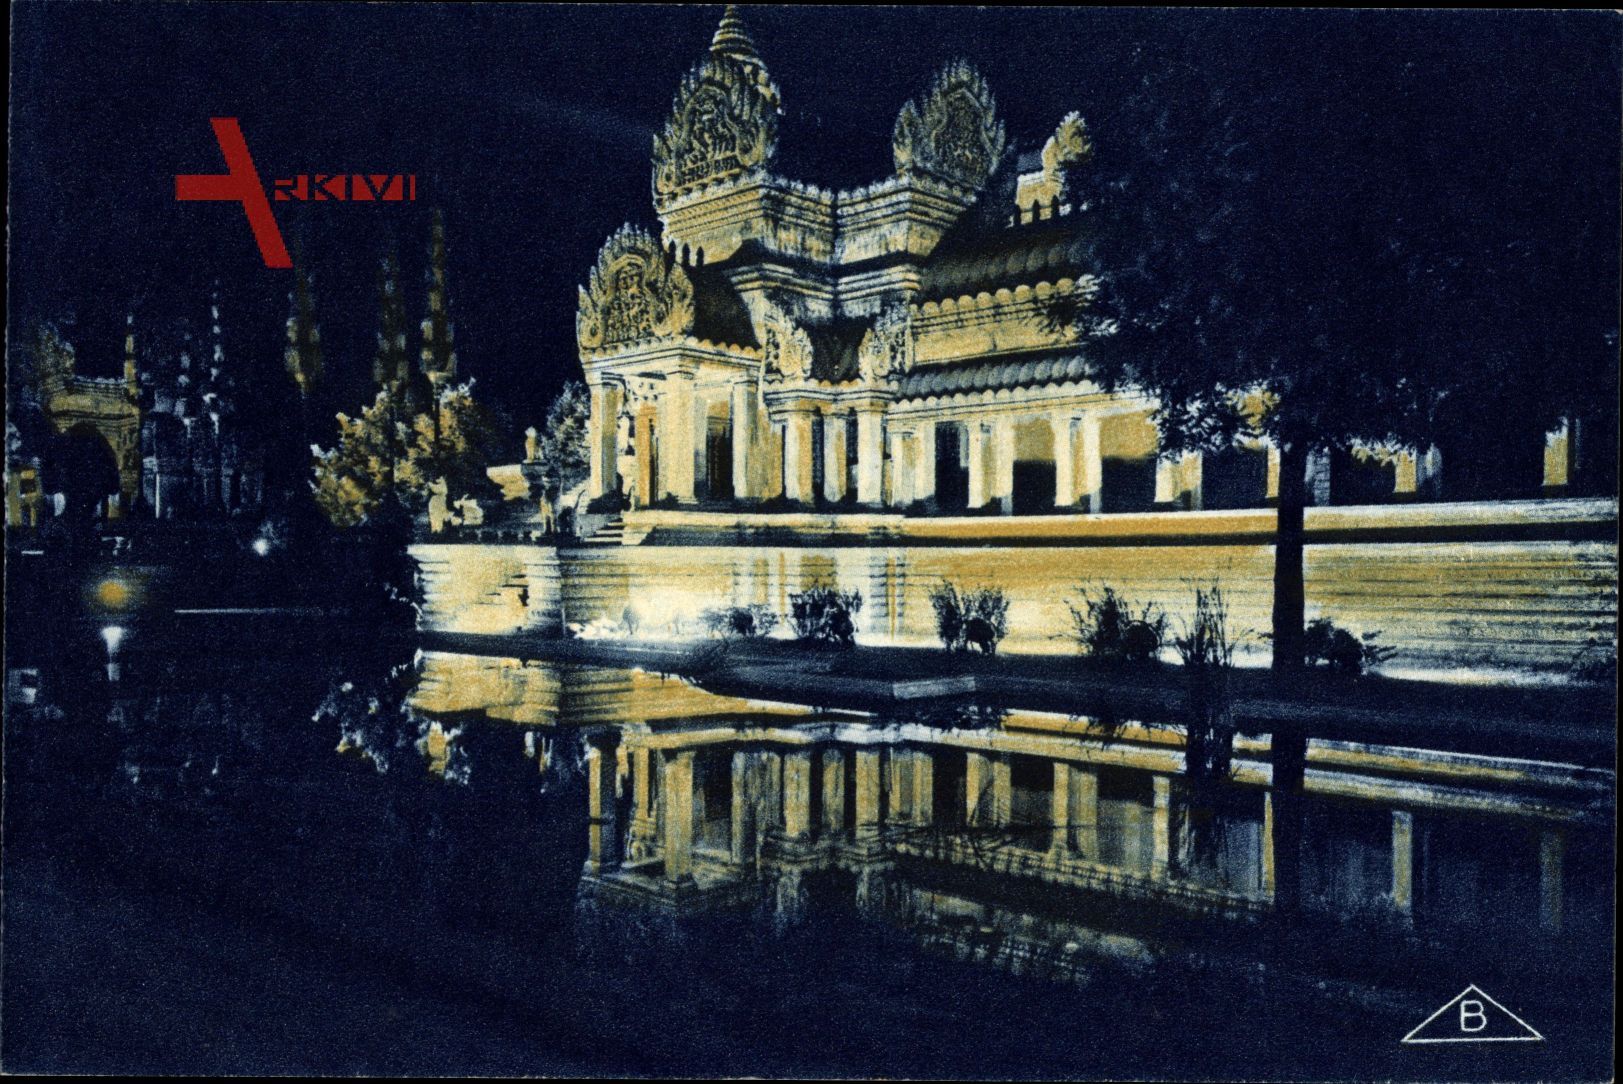 Angkor Vat Kambodscha, Vue de nuit, Nachtansicht, Beleuchtung